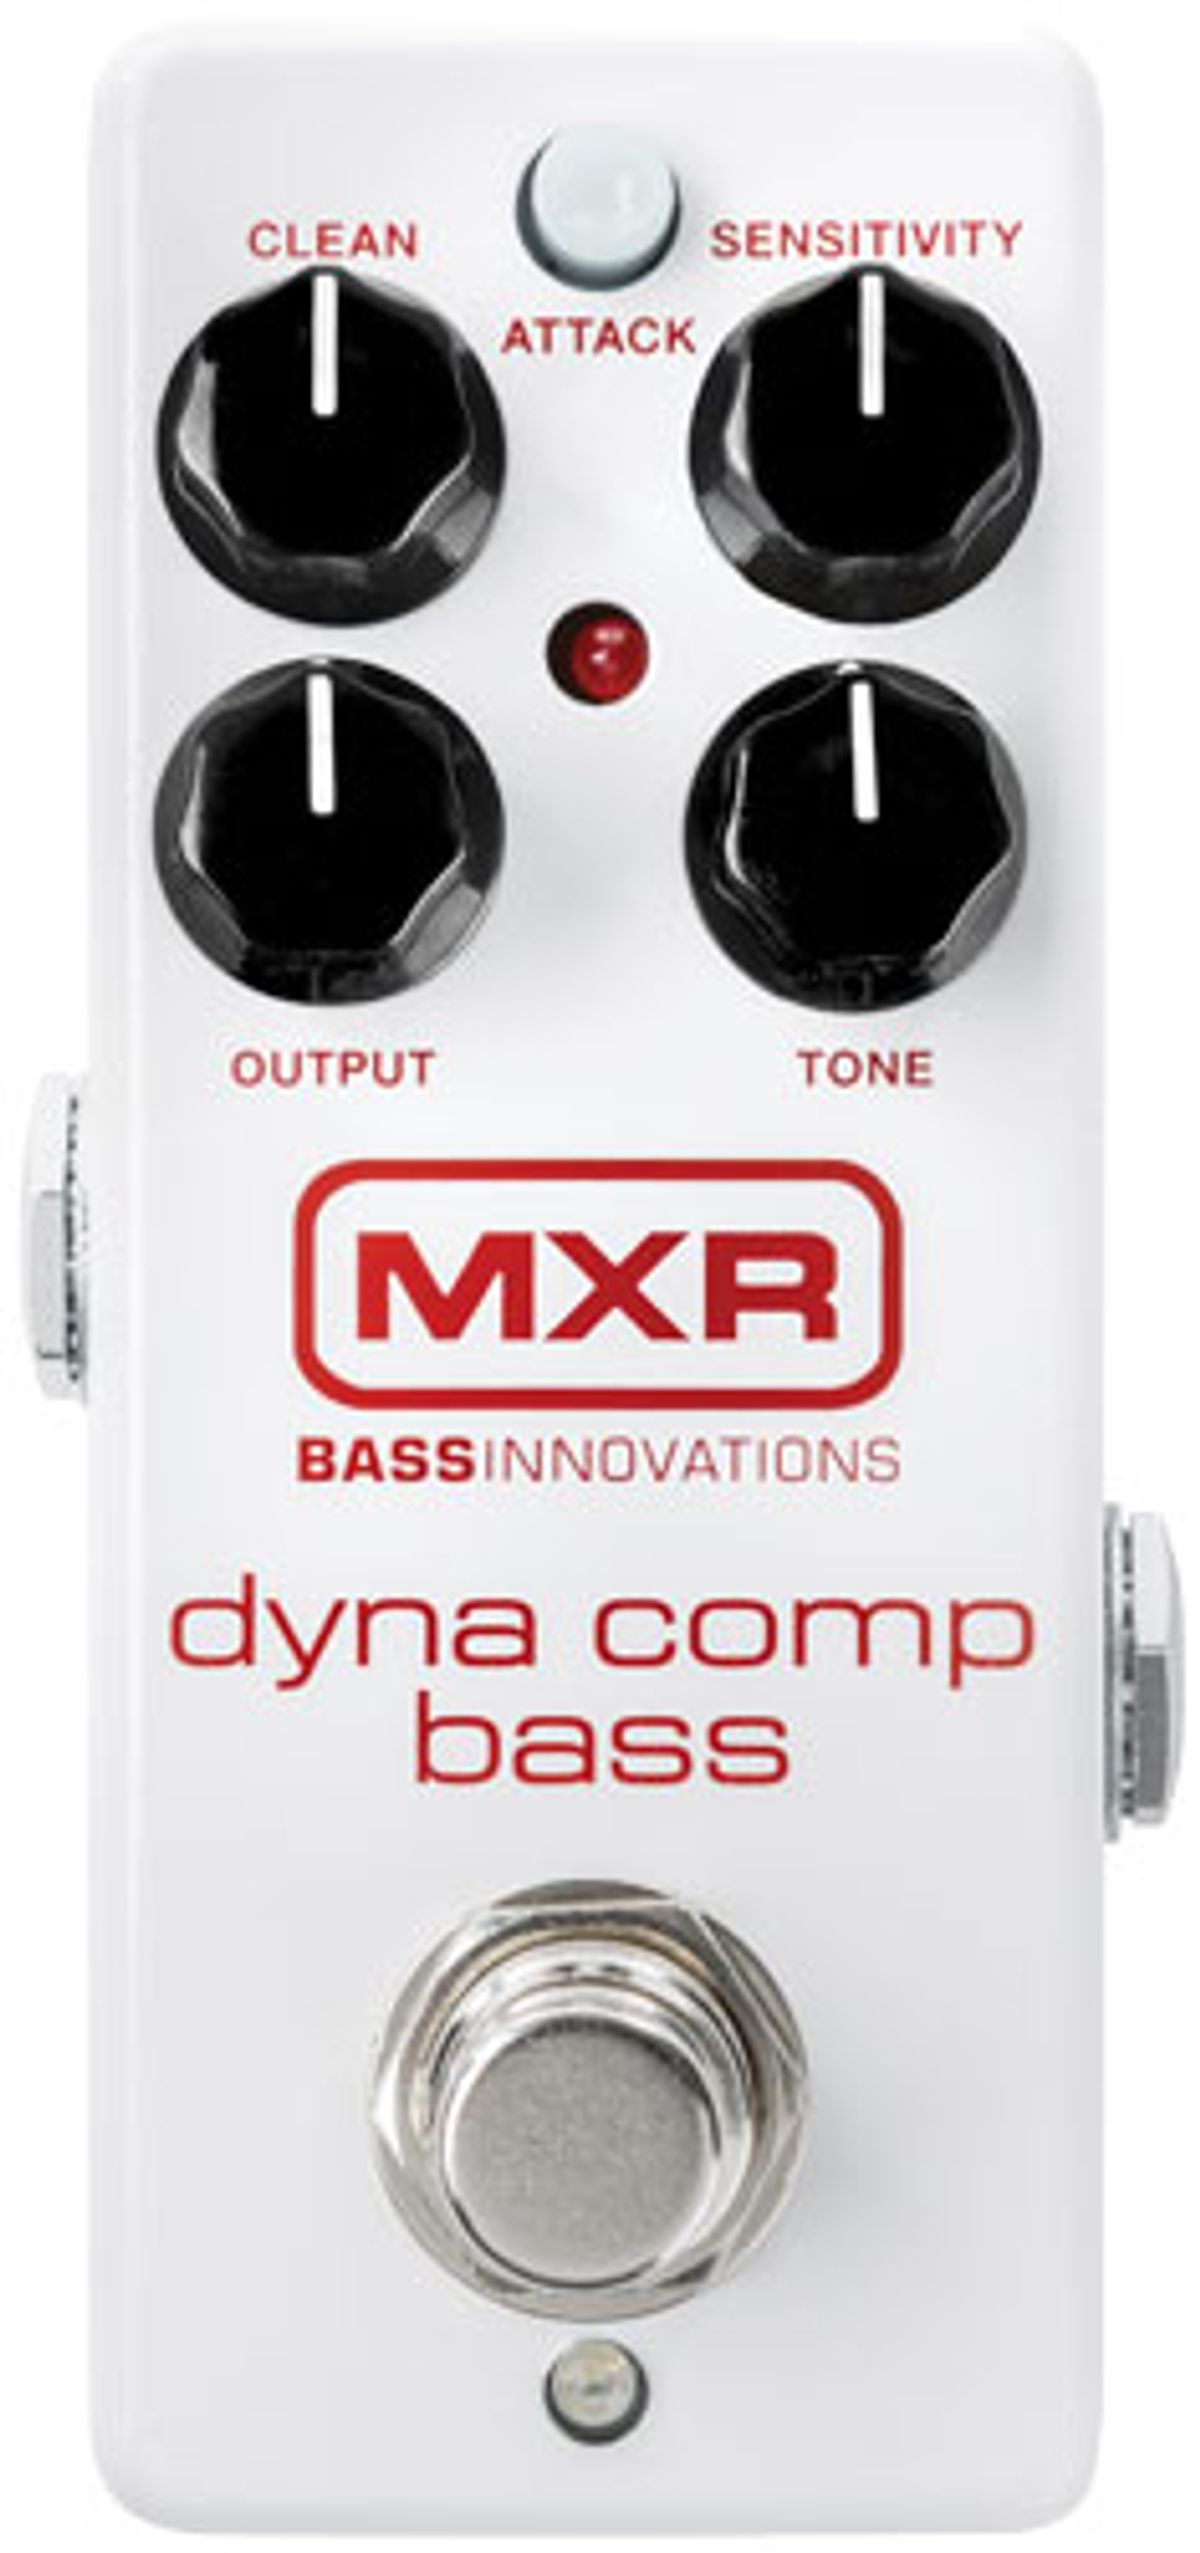 MXR Dyna Comp Bass Review